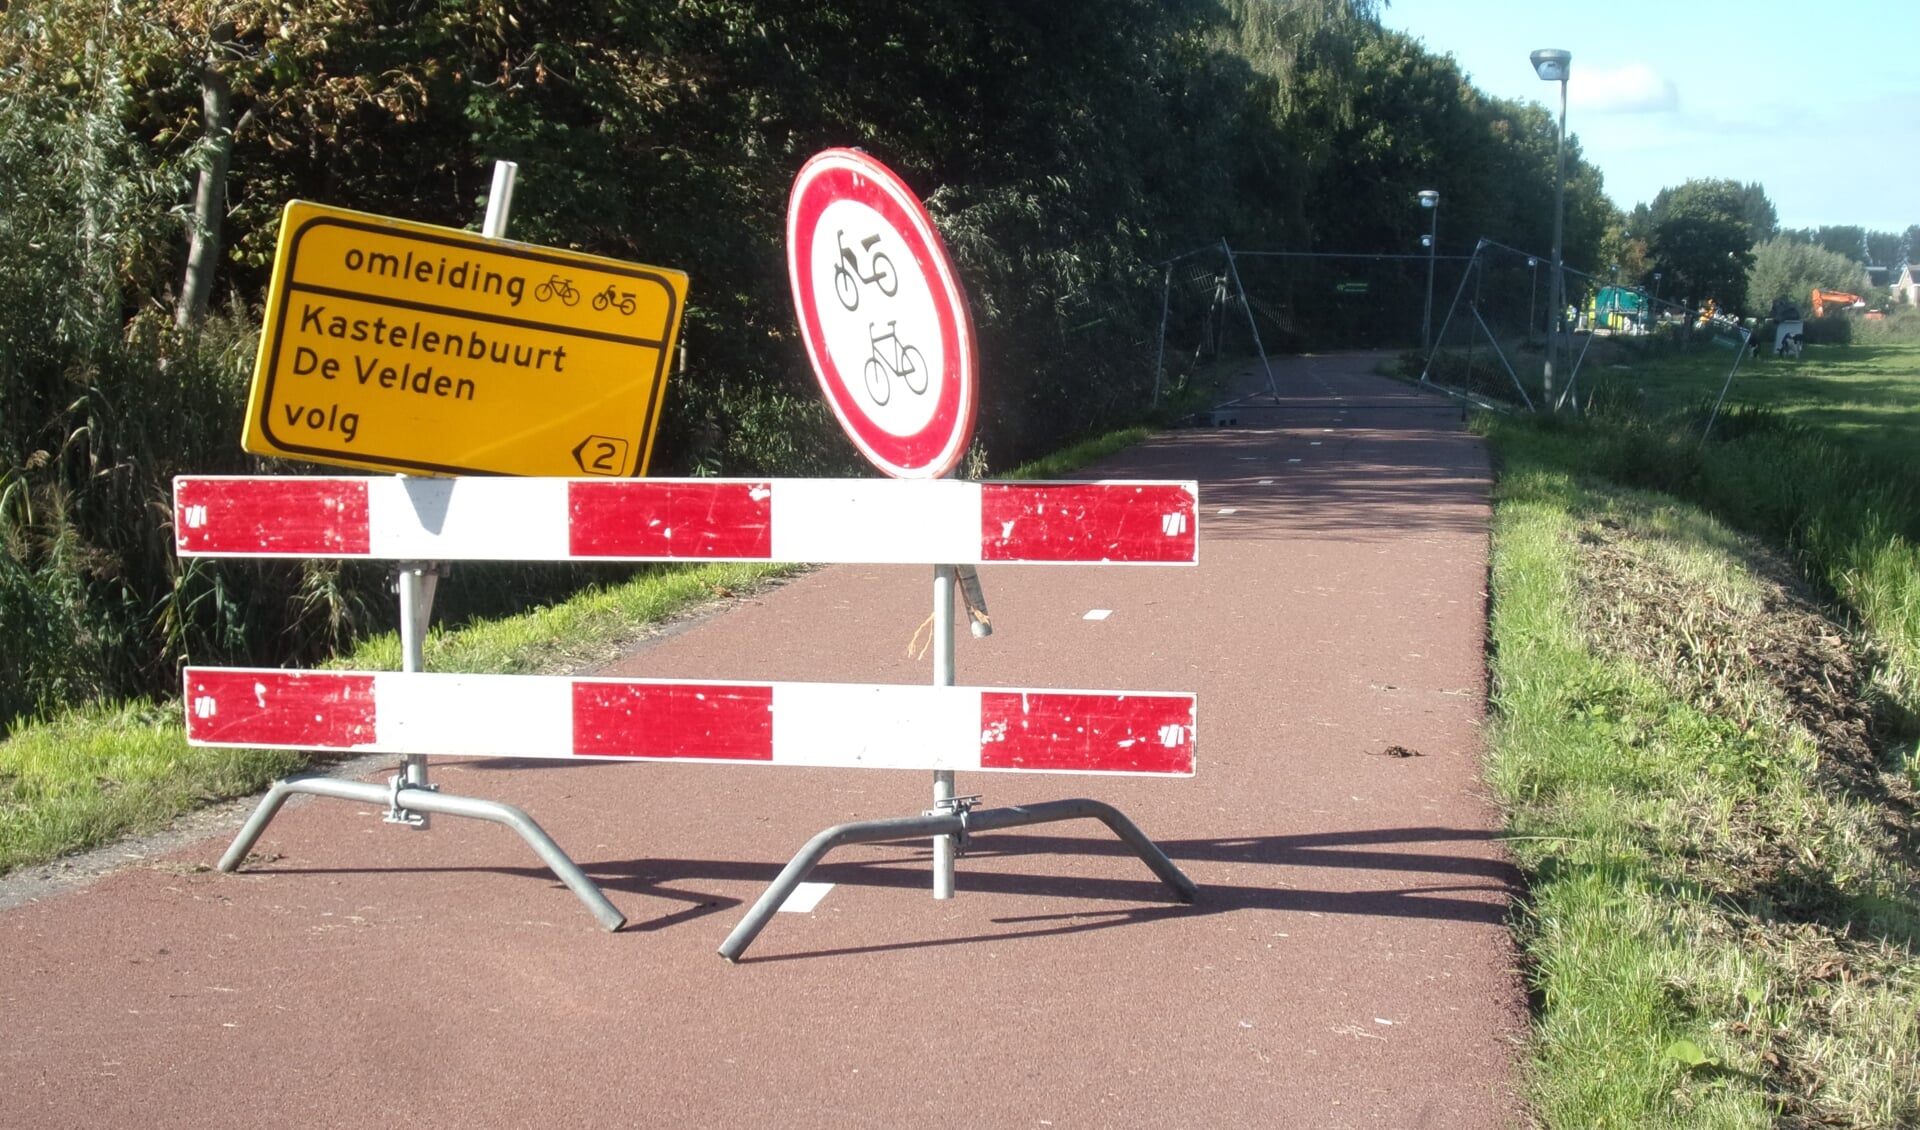 Omleidingsbord voor fietsers. Familie Boon: "De plek waar aanduidingen richting Delft totaal ontbreken." 